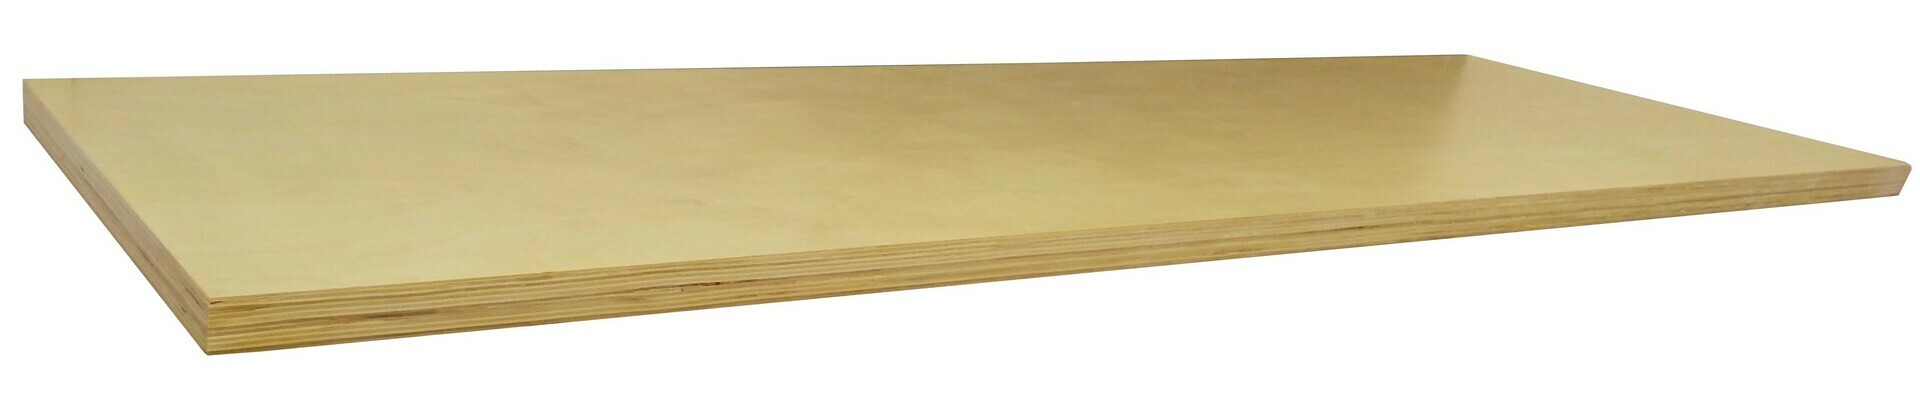 Dřevěná pracovní deska Procarosa PROFI TGW-80 na tři skříňky Procarosa